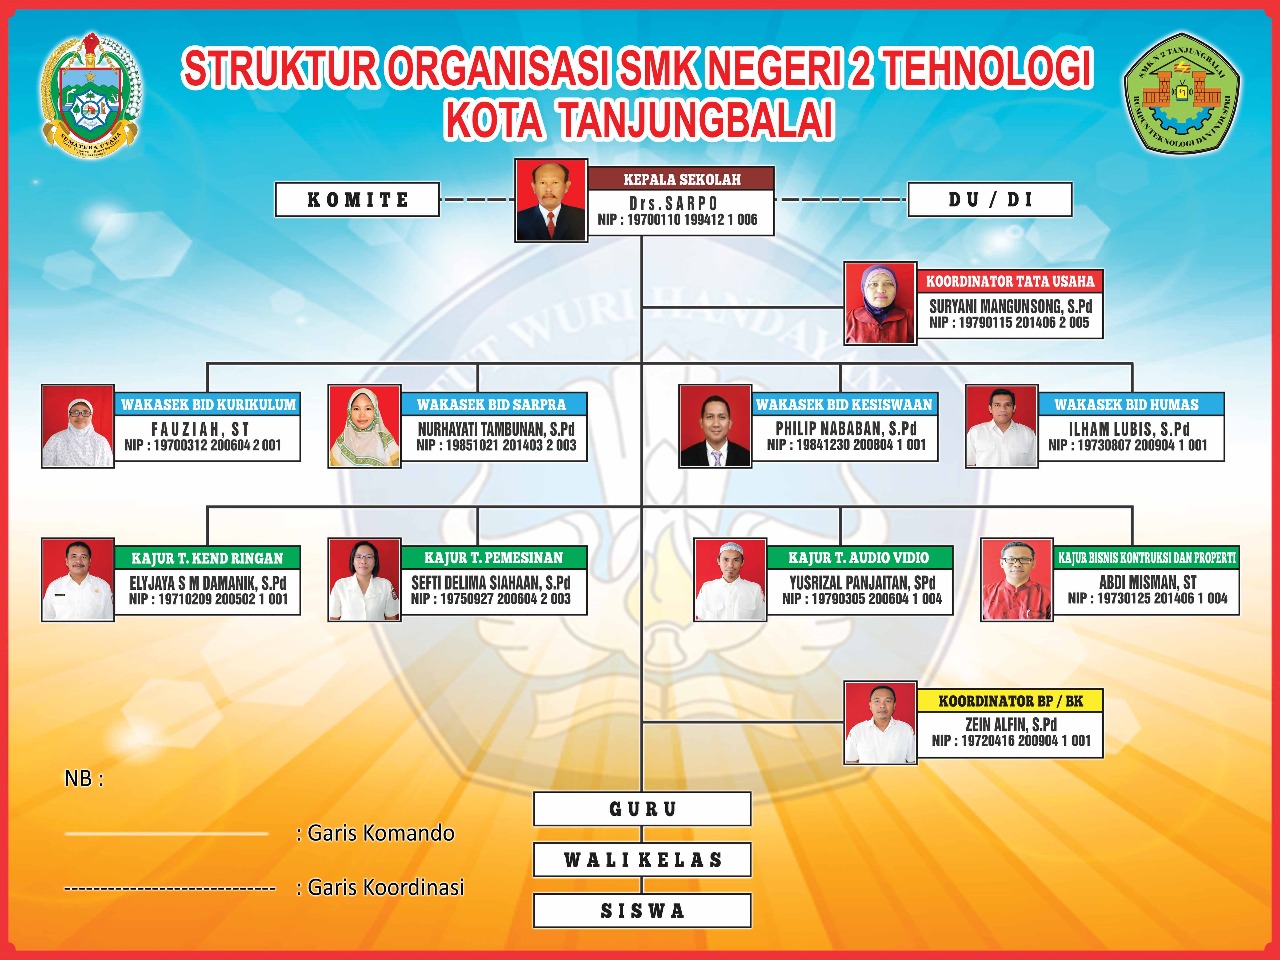 Struktur SMK Negeri 2 Tanjungbalai 2018 Terbaru!!